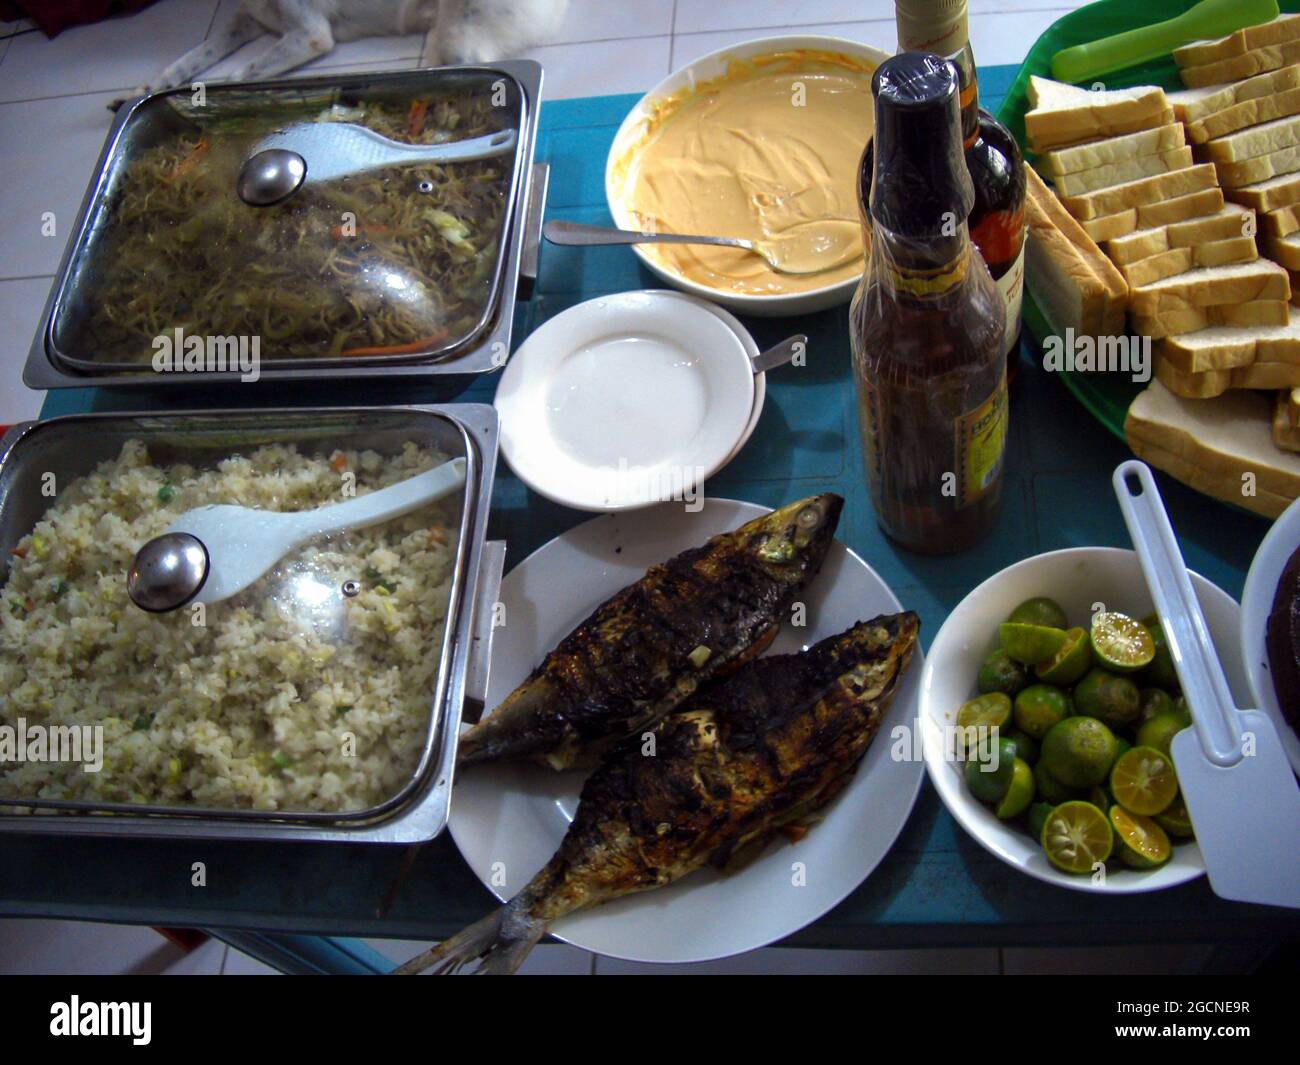 Se sirve comida fresca para la cena y se presenta en una mesa en Sabang, Filipinas 30.10.2018 Foto de stock